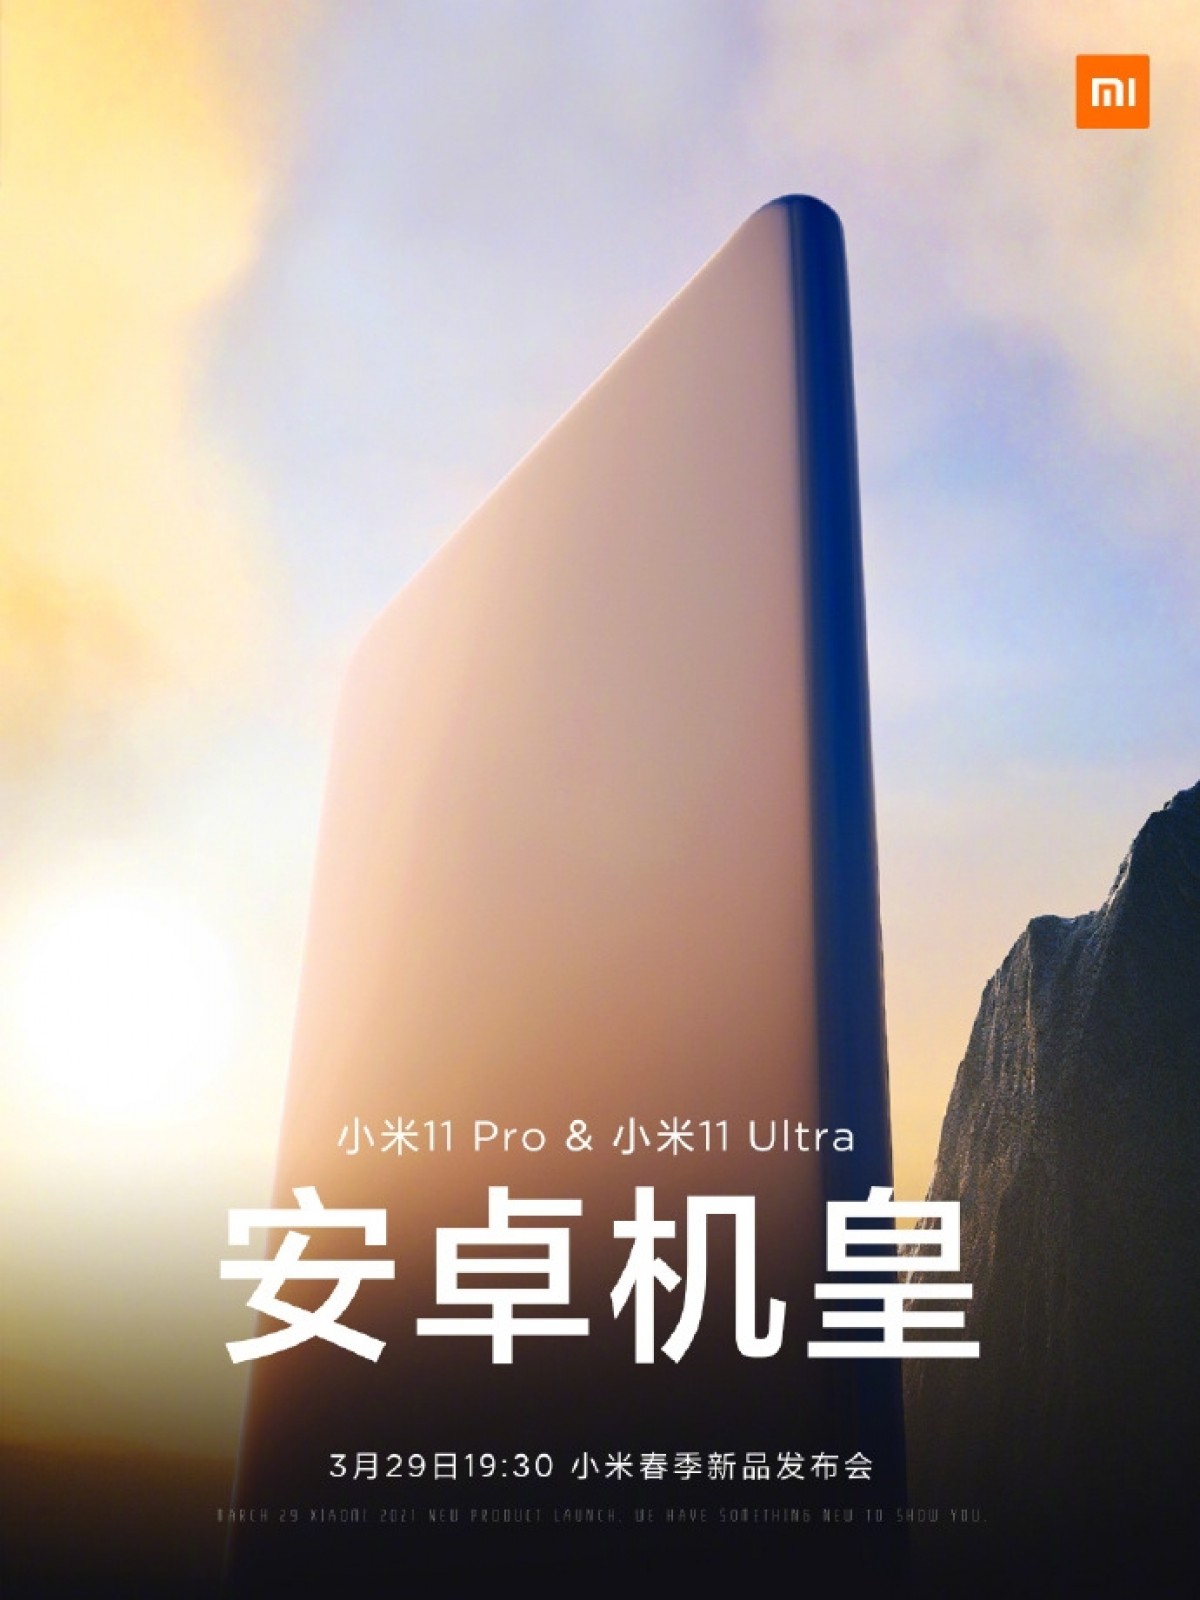 Xiaomi Mi 11 Pro i Mi 11 Ultra zobaczymy 29 marca